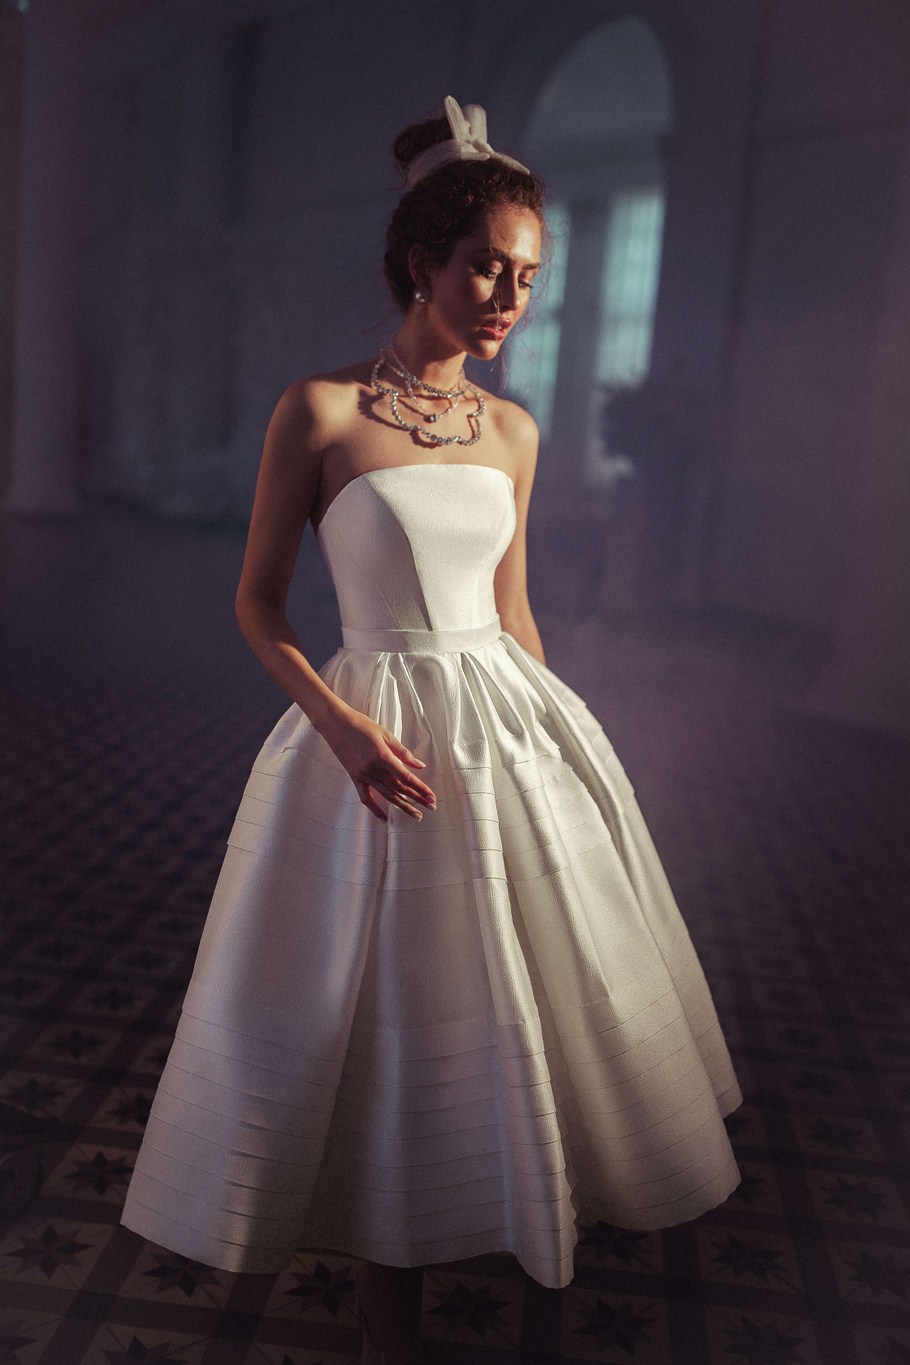 Купить свадебное платье «Эолиа» Бламмо Биамо из коллекции Свит Лайф 2021 года в Екатеринбурге